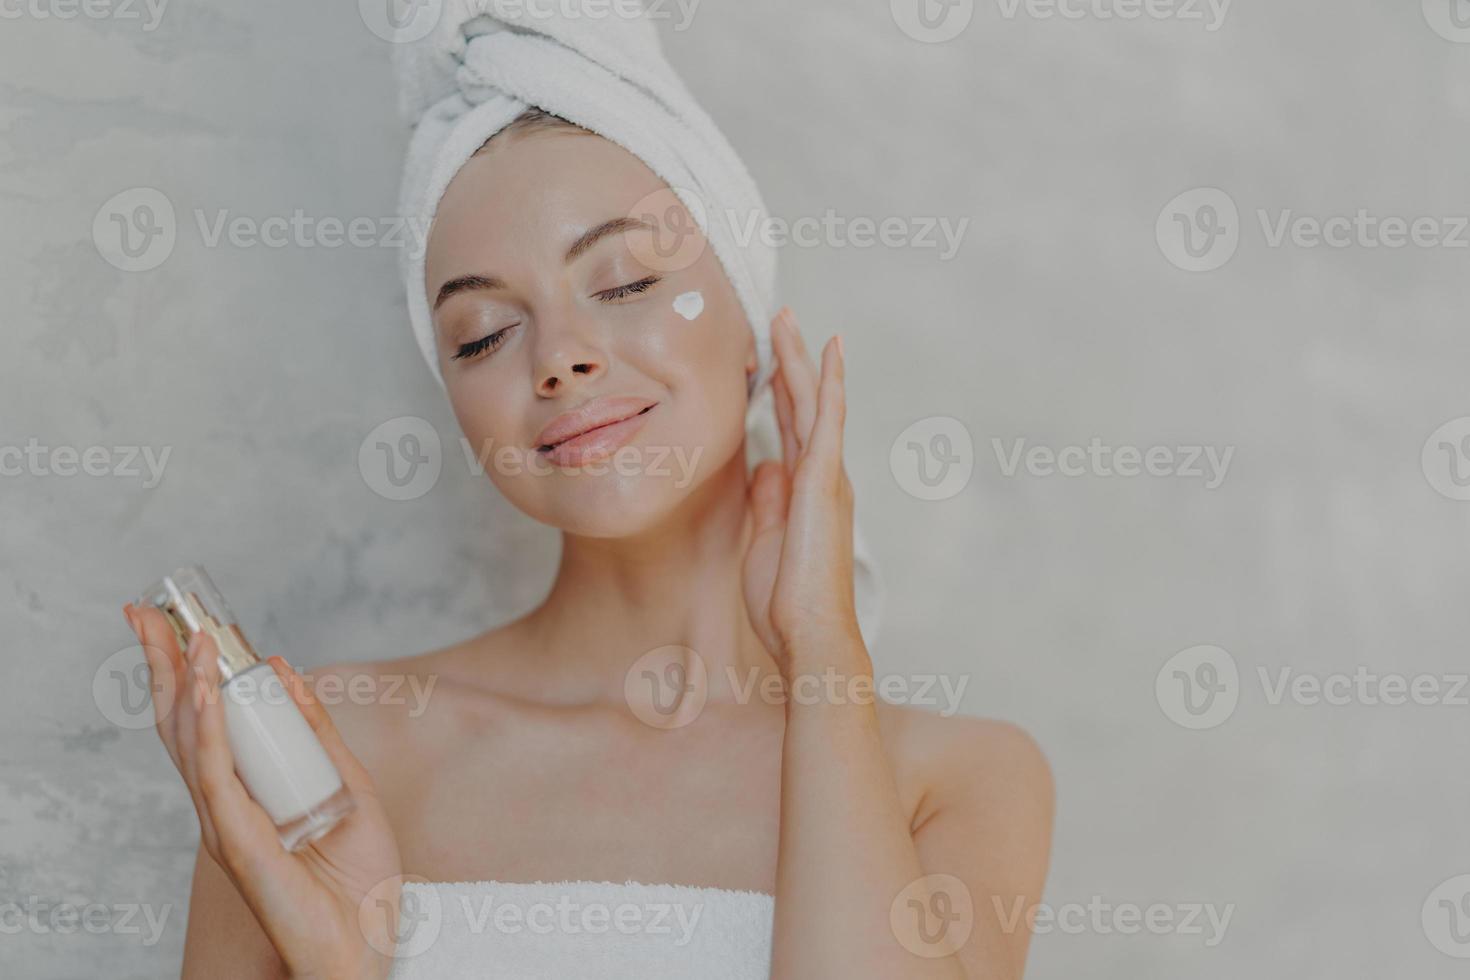 photo de tête d'une jolie femme ravie applique une lotion pour le visage, satisfaite du nouveau produit cosmétique, garde les yeux fermés, touche la peau douce après le bain, a un teint bien soigné, pose contre un mur gris